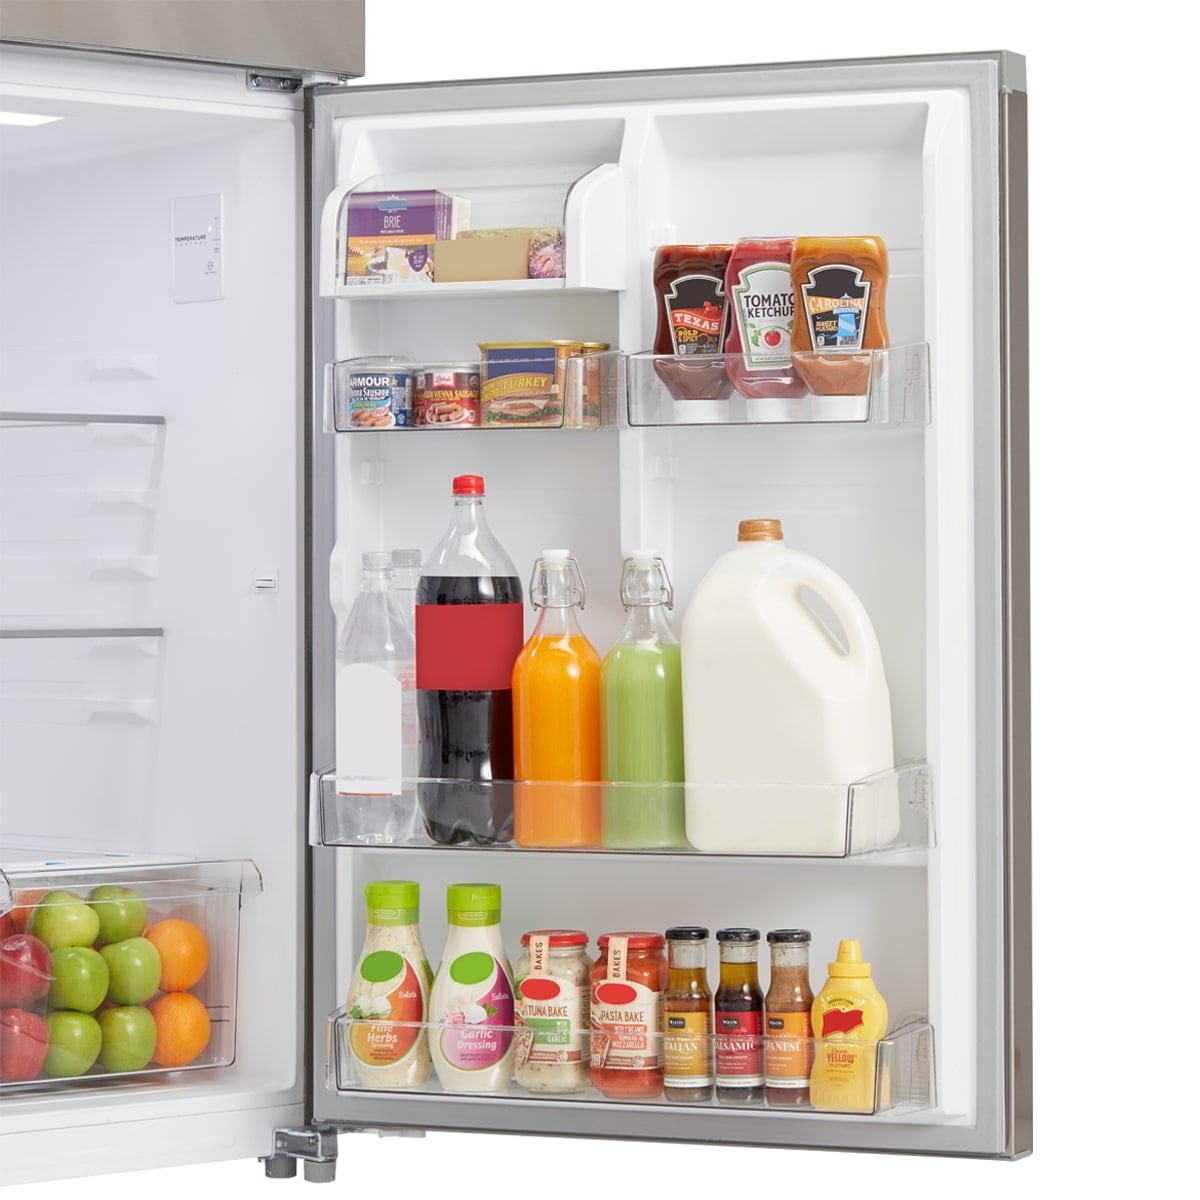 Réfrigérateur Midea de 18 pi3 à congélateur supérieur - MRT18S4AWW